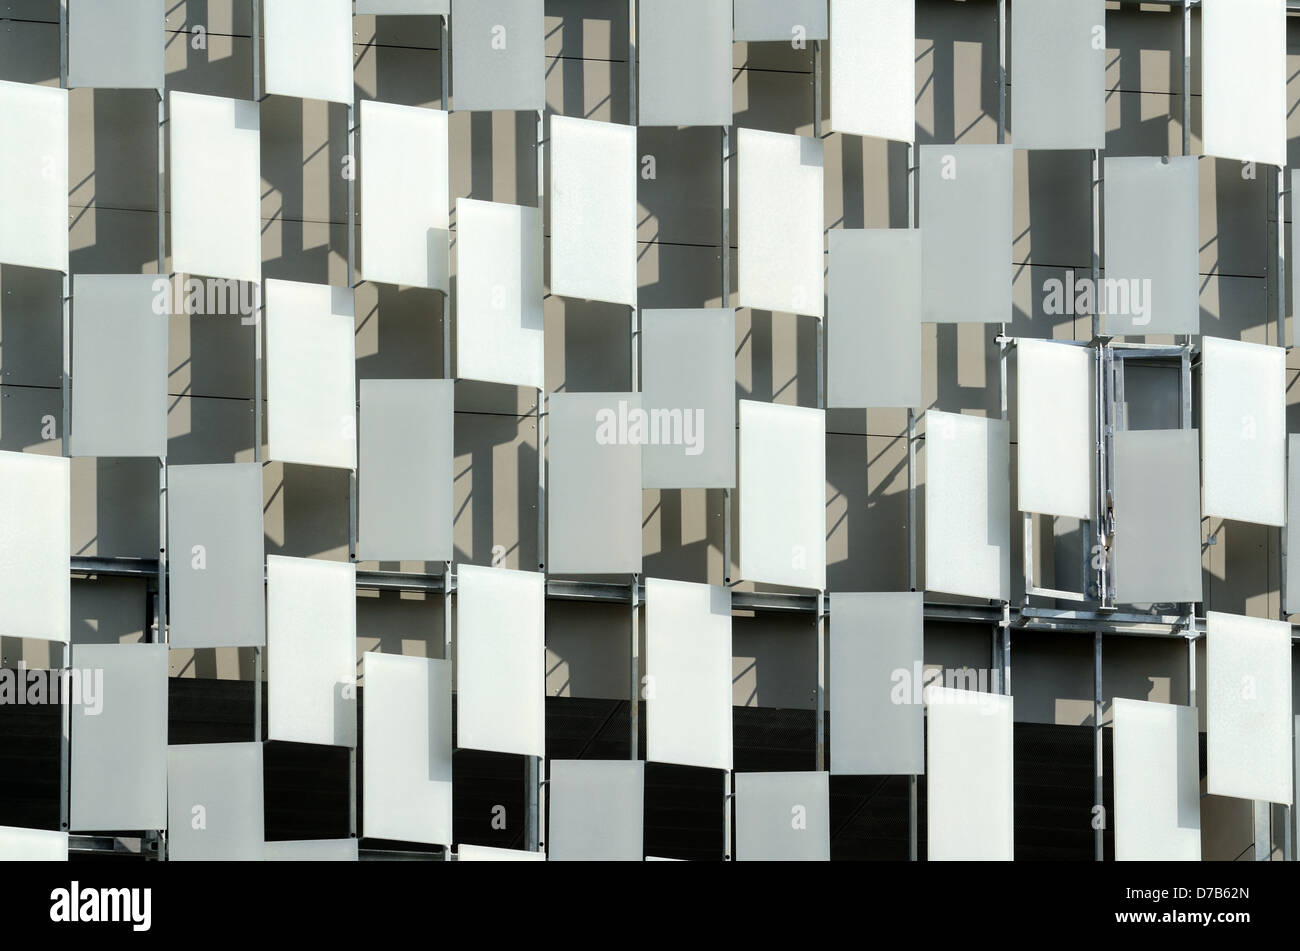 Façade avec stores solaires « Pixel », stores de fenêtre ou panneaux du Musée d'art ou de la Galerie d'art de la FRAC (2013) par Kengo Kuma Marseille Provence France Banque D'Images